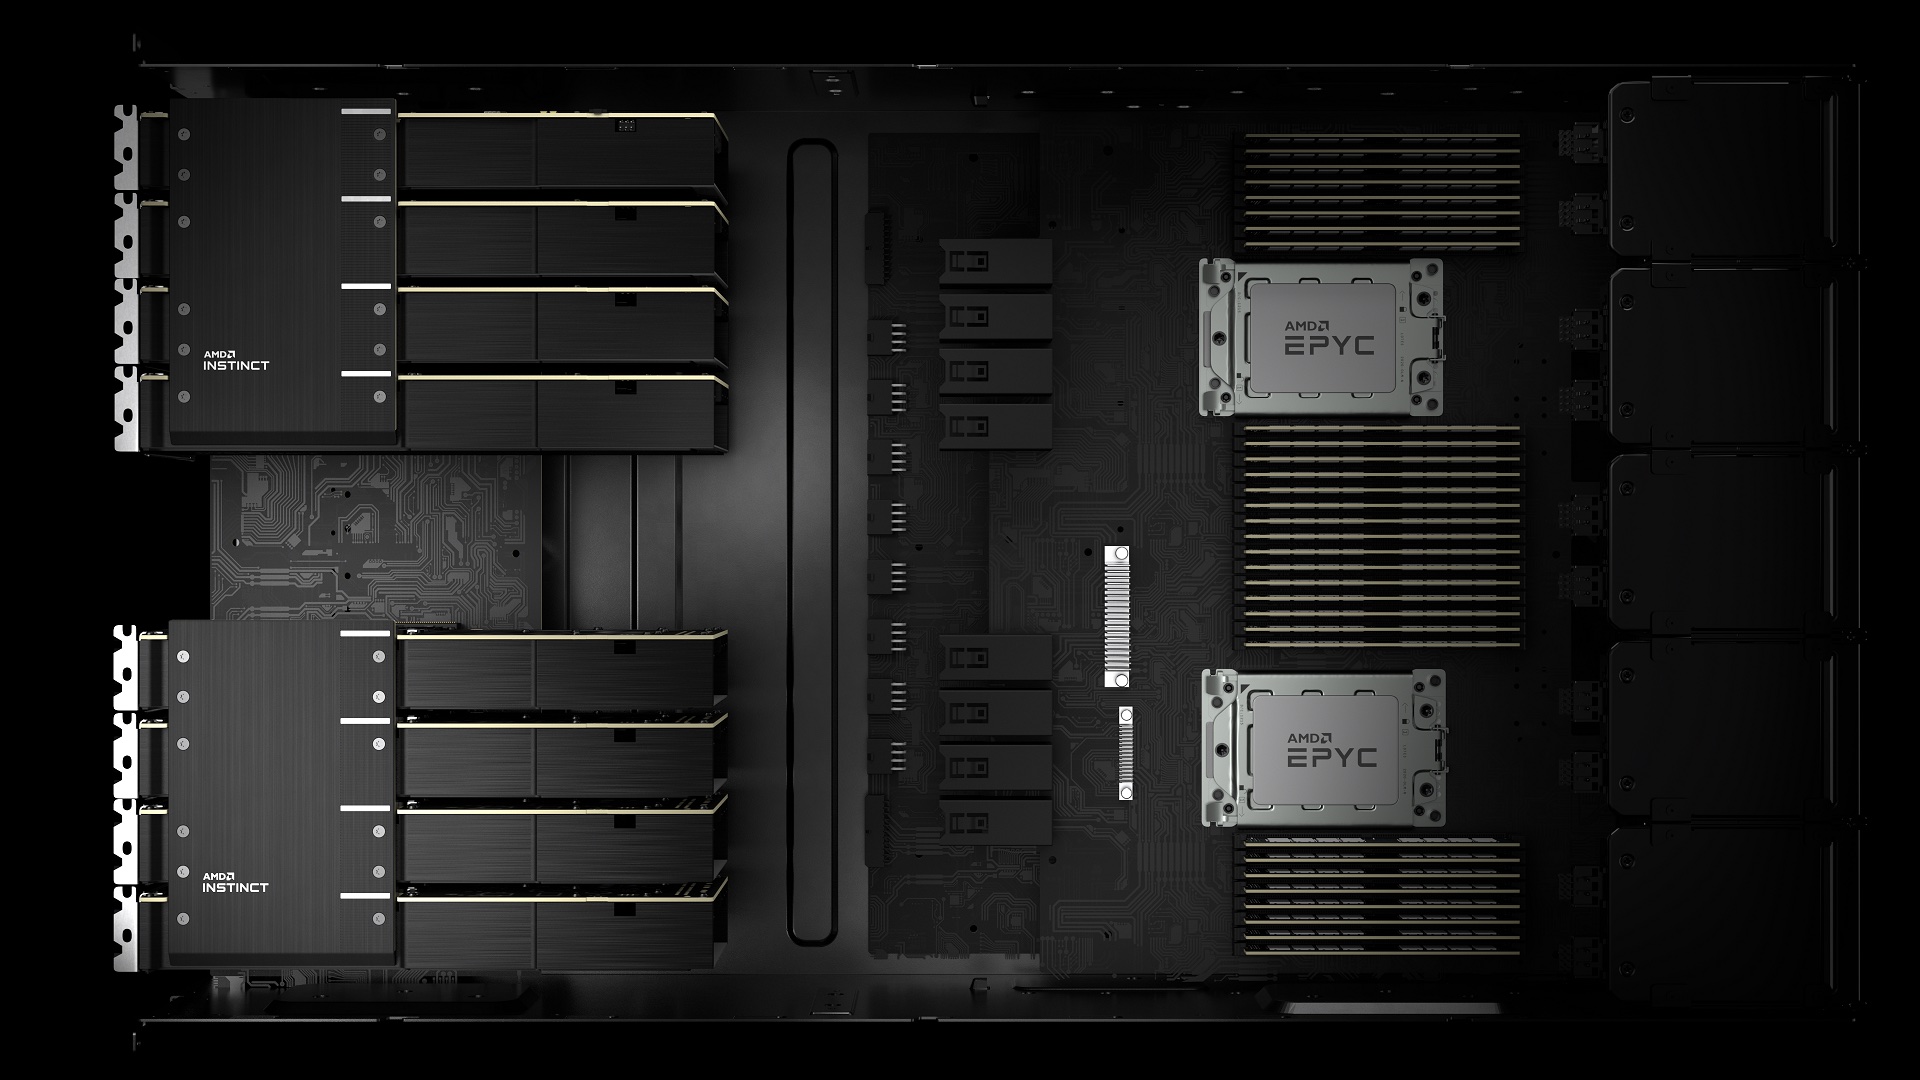 AMD နှင့် HPE တို့သည် Adastra စူပါကွန်ပြူတာ၏ အထောက်အပံ့ကို ထုတ်ဖော်ပြသခဲ့သည်။